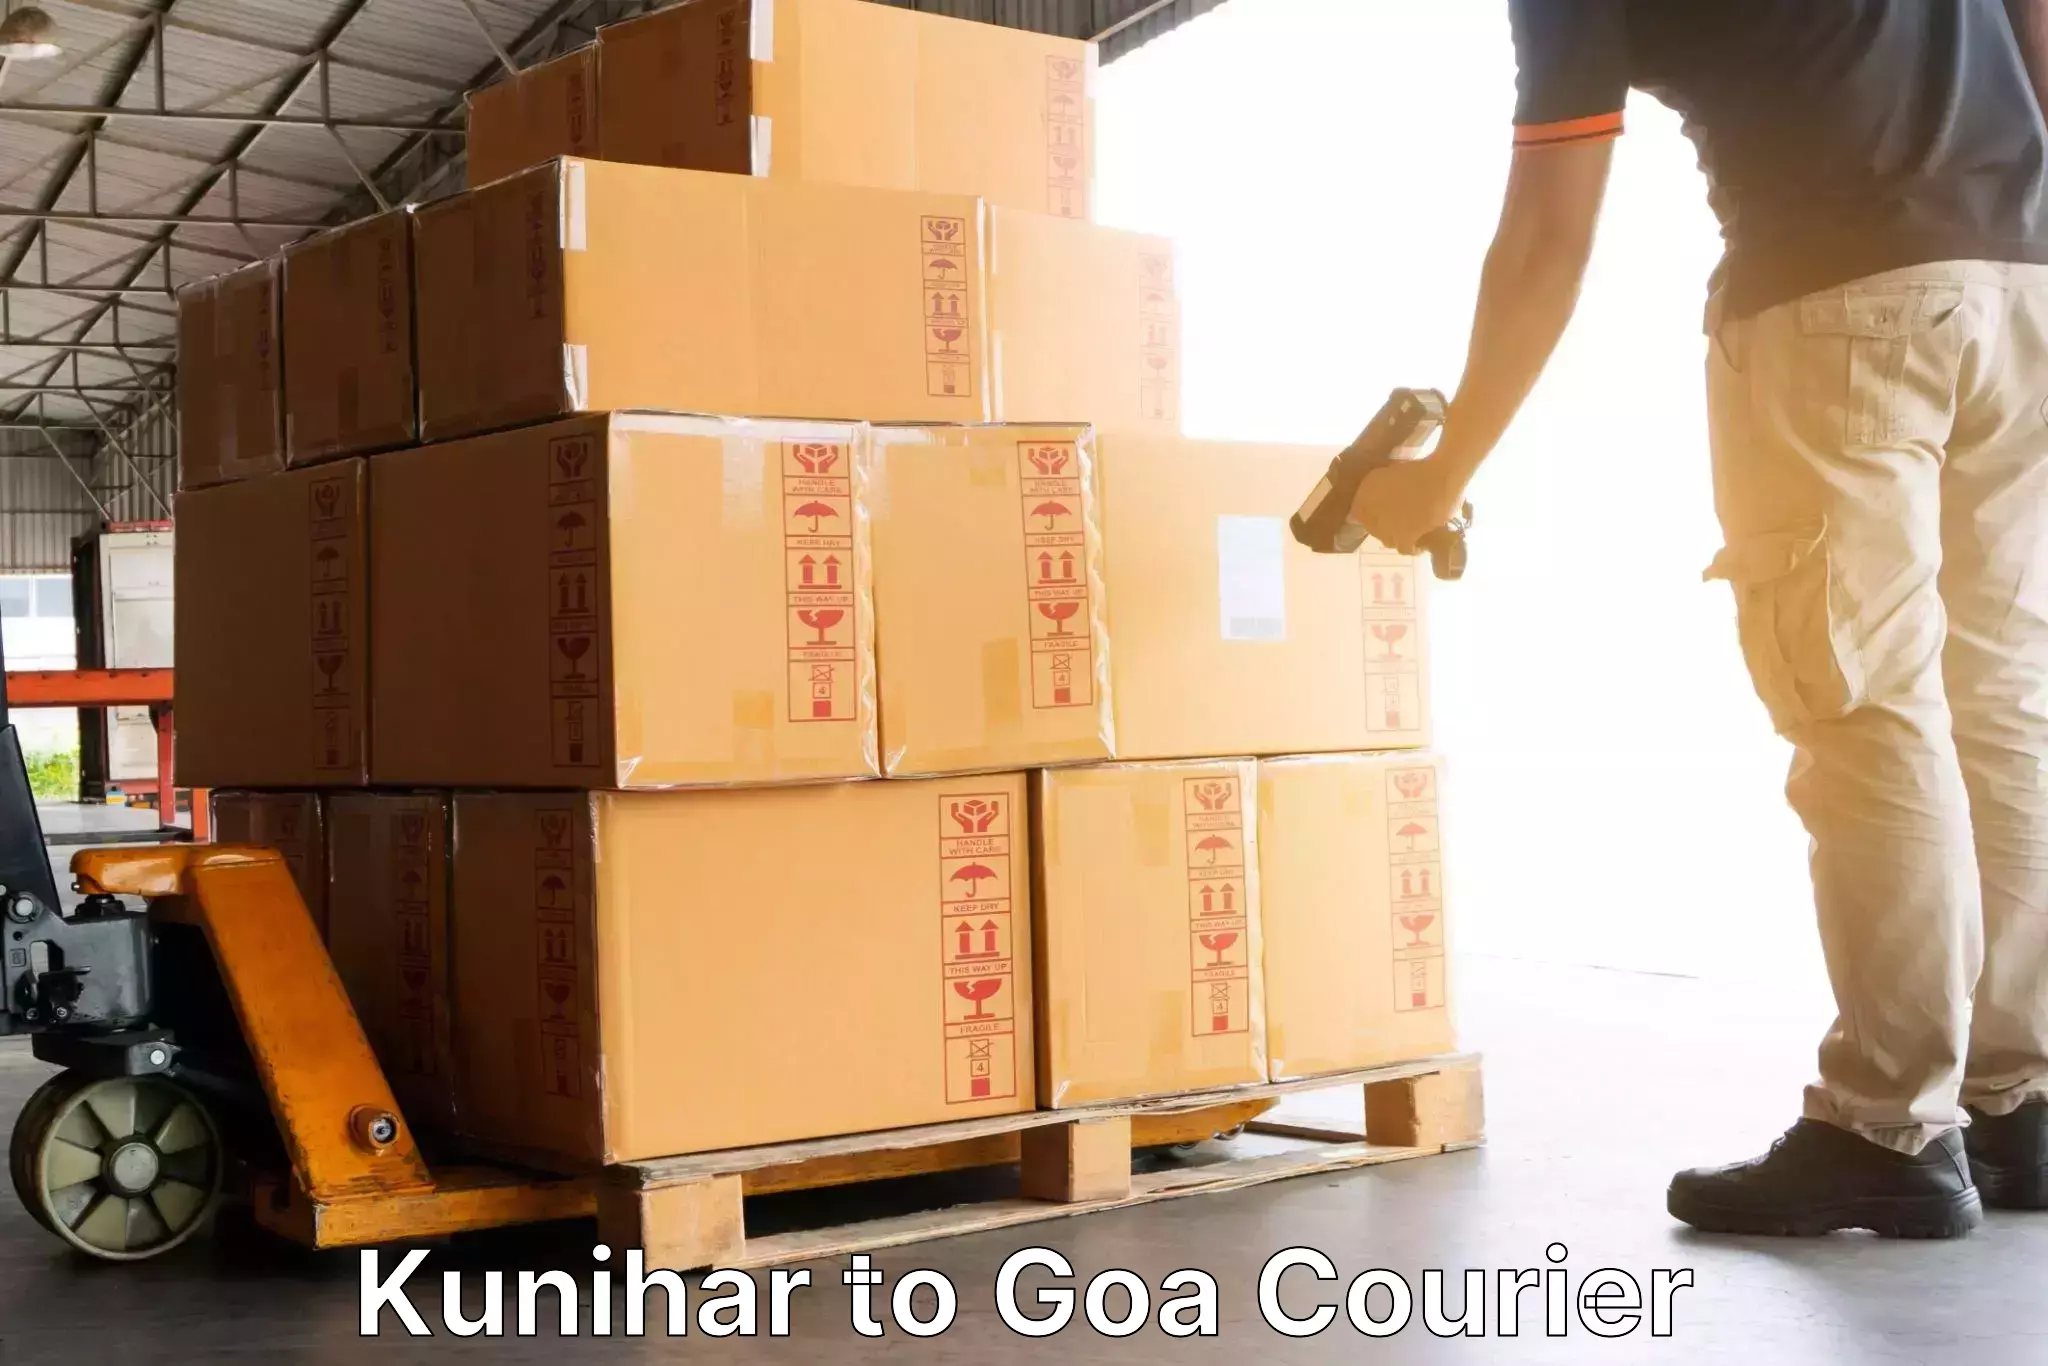 E-commerce logistics support in Kunihar to Goa